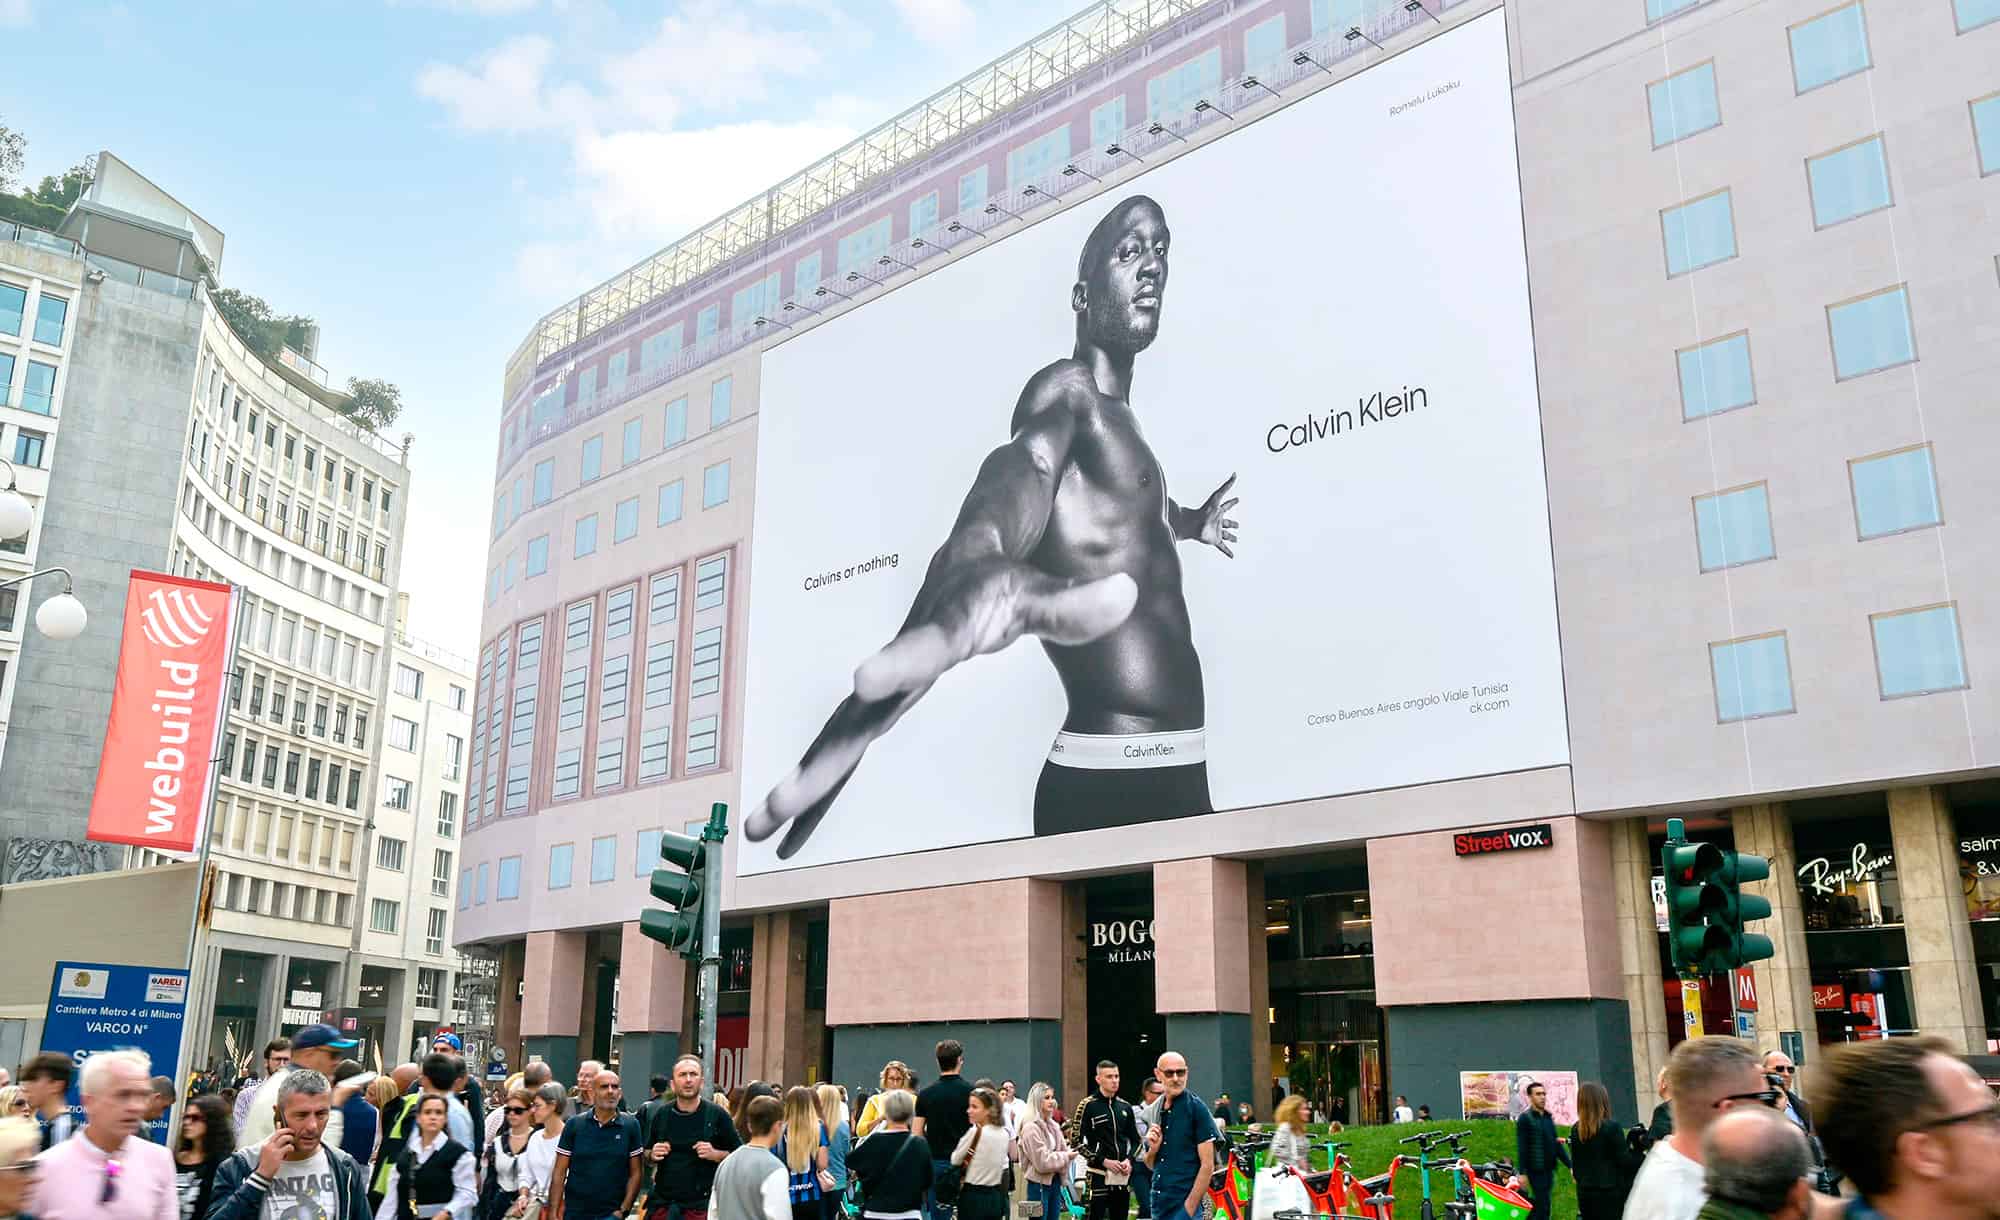 Maxi Affissione a Milano in Piazza San Babila 3 con Calvin Klein